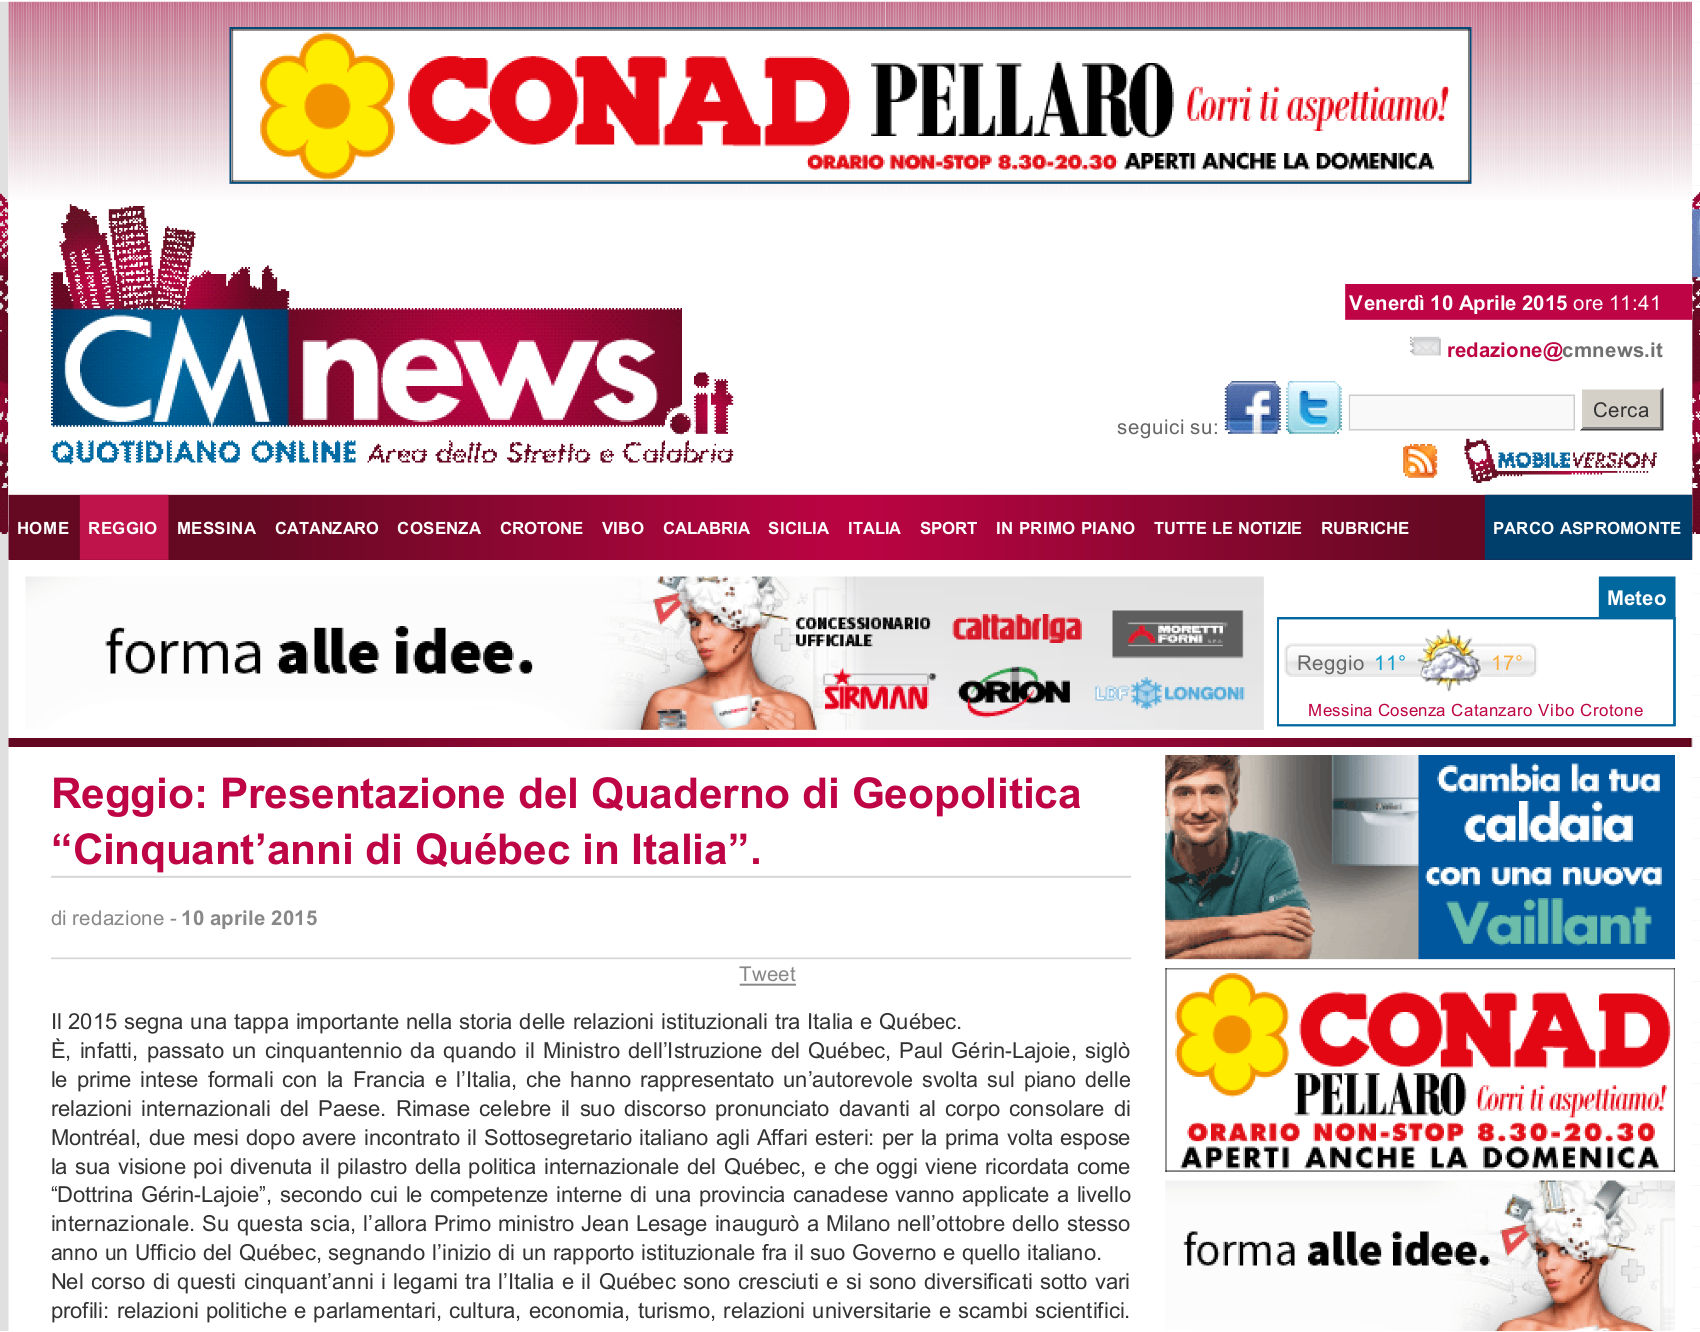 Articolo pubblicato sul sito cmnews.it cmnews.it Più : www.alexa.com/siteinfo/cmnews.it Estrazione : 10/04/2015 09:16:06 Categoria : Attualità File : piwi-9-12-272630-20150410-2004850143.